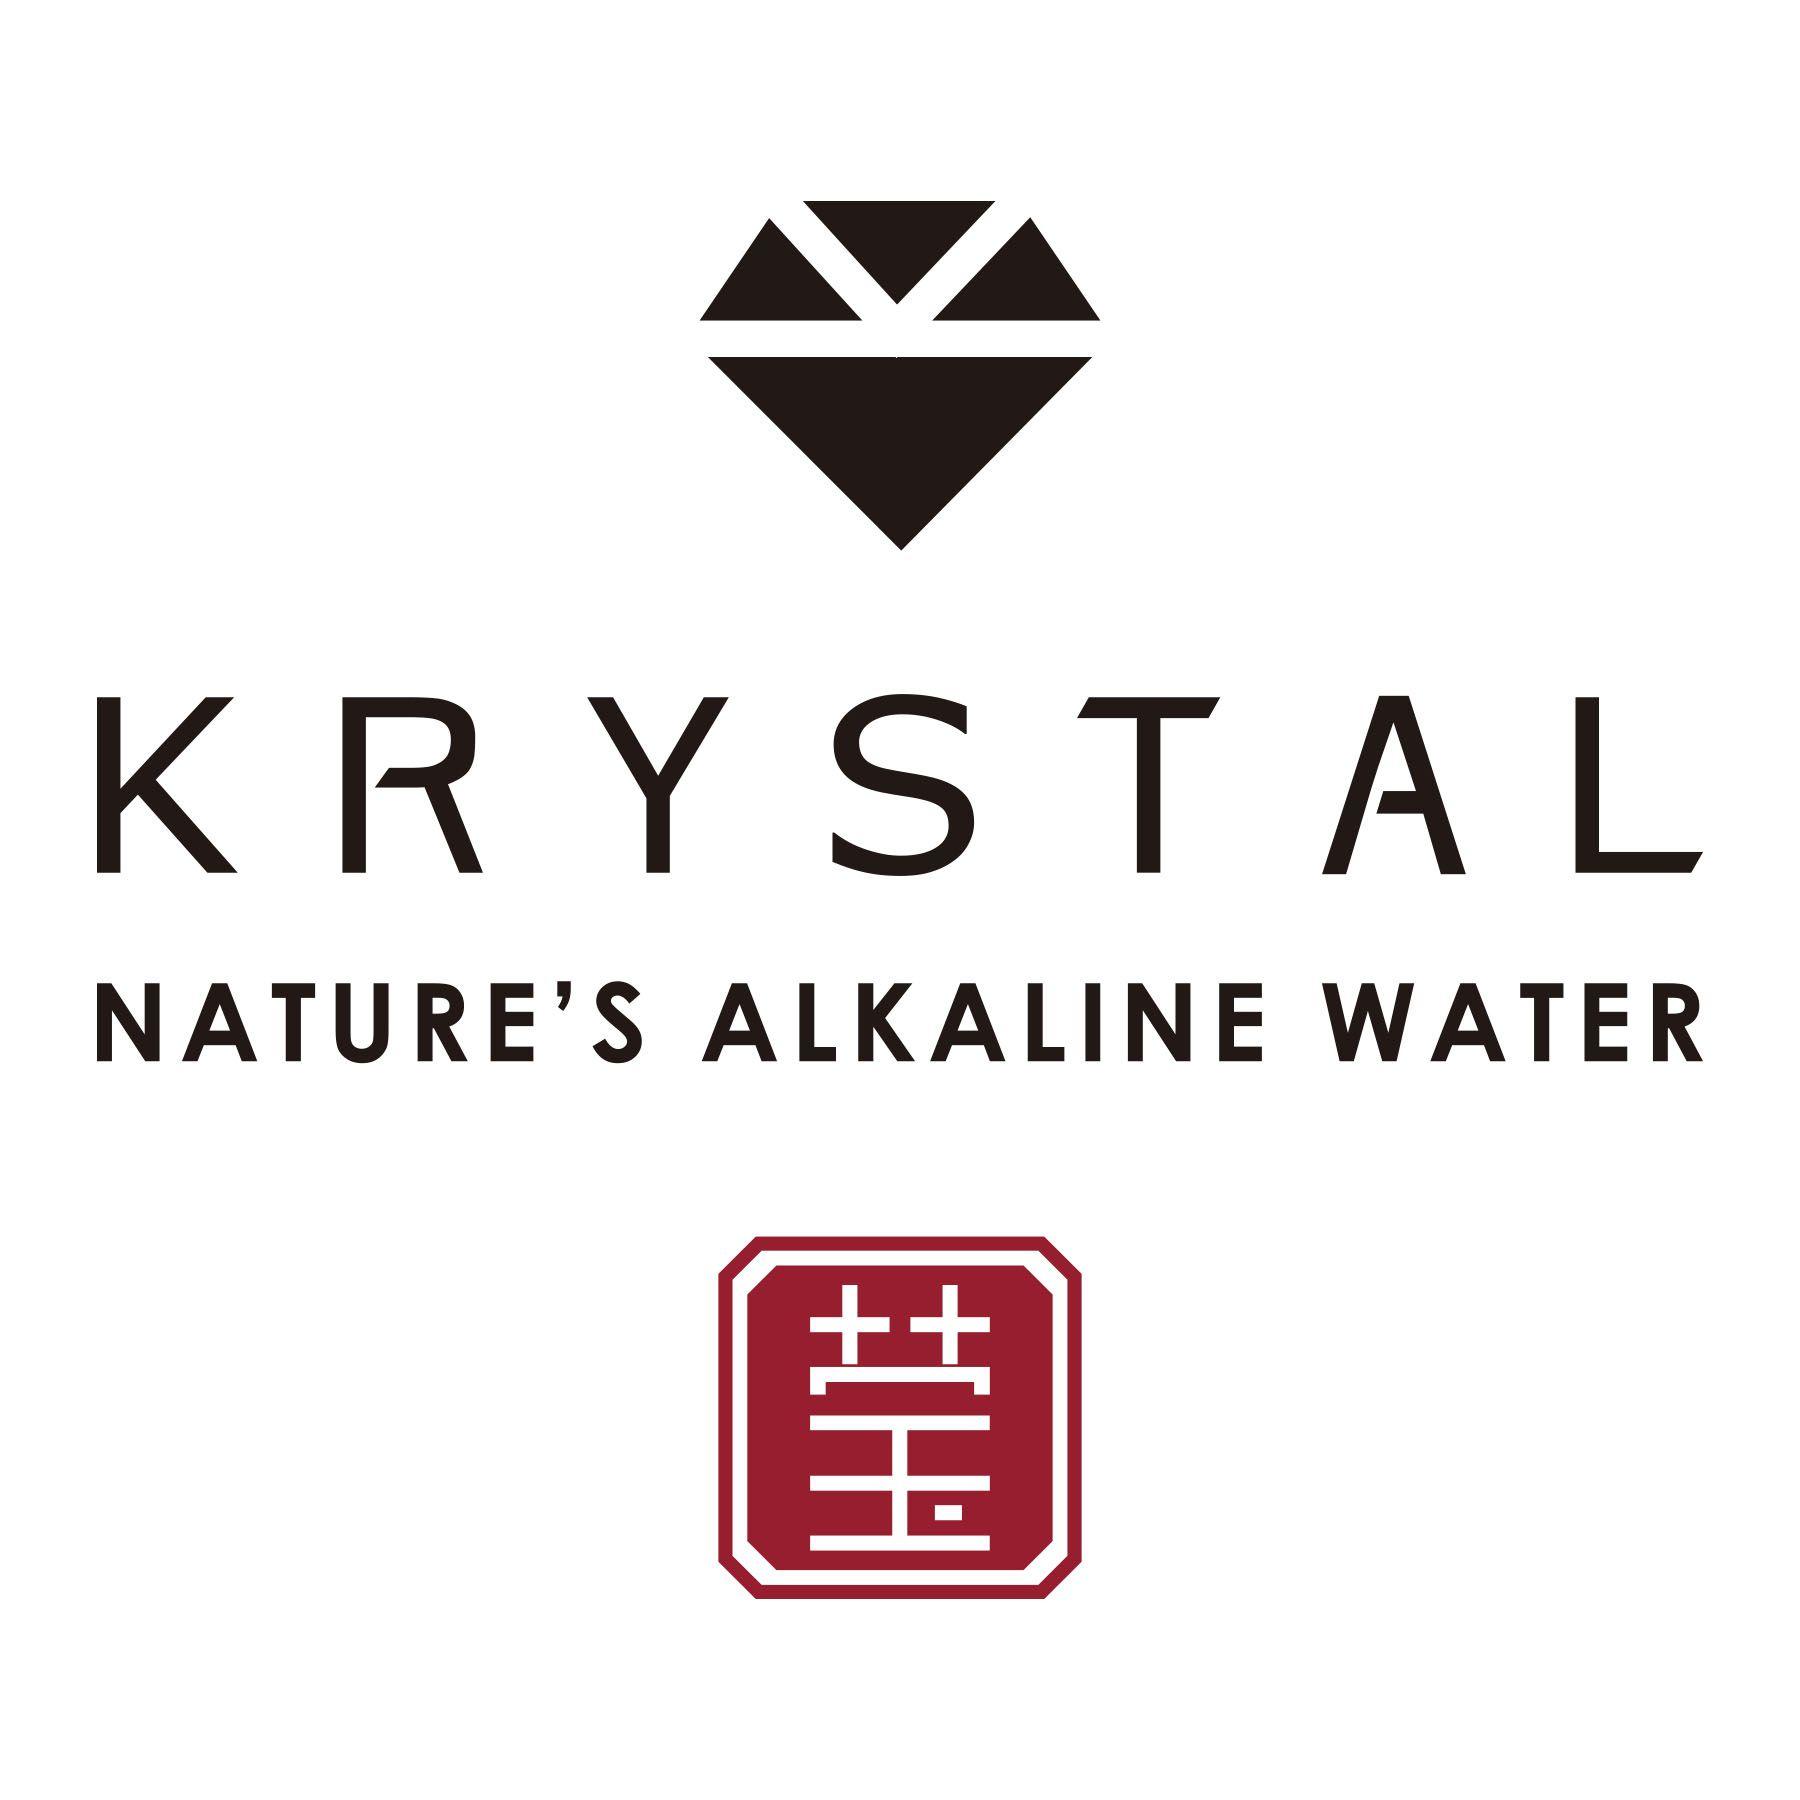 Krystal's Logo - KRYSTAL Nature's Alkaline Water Packaging